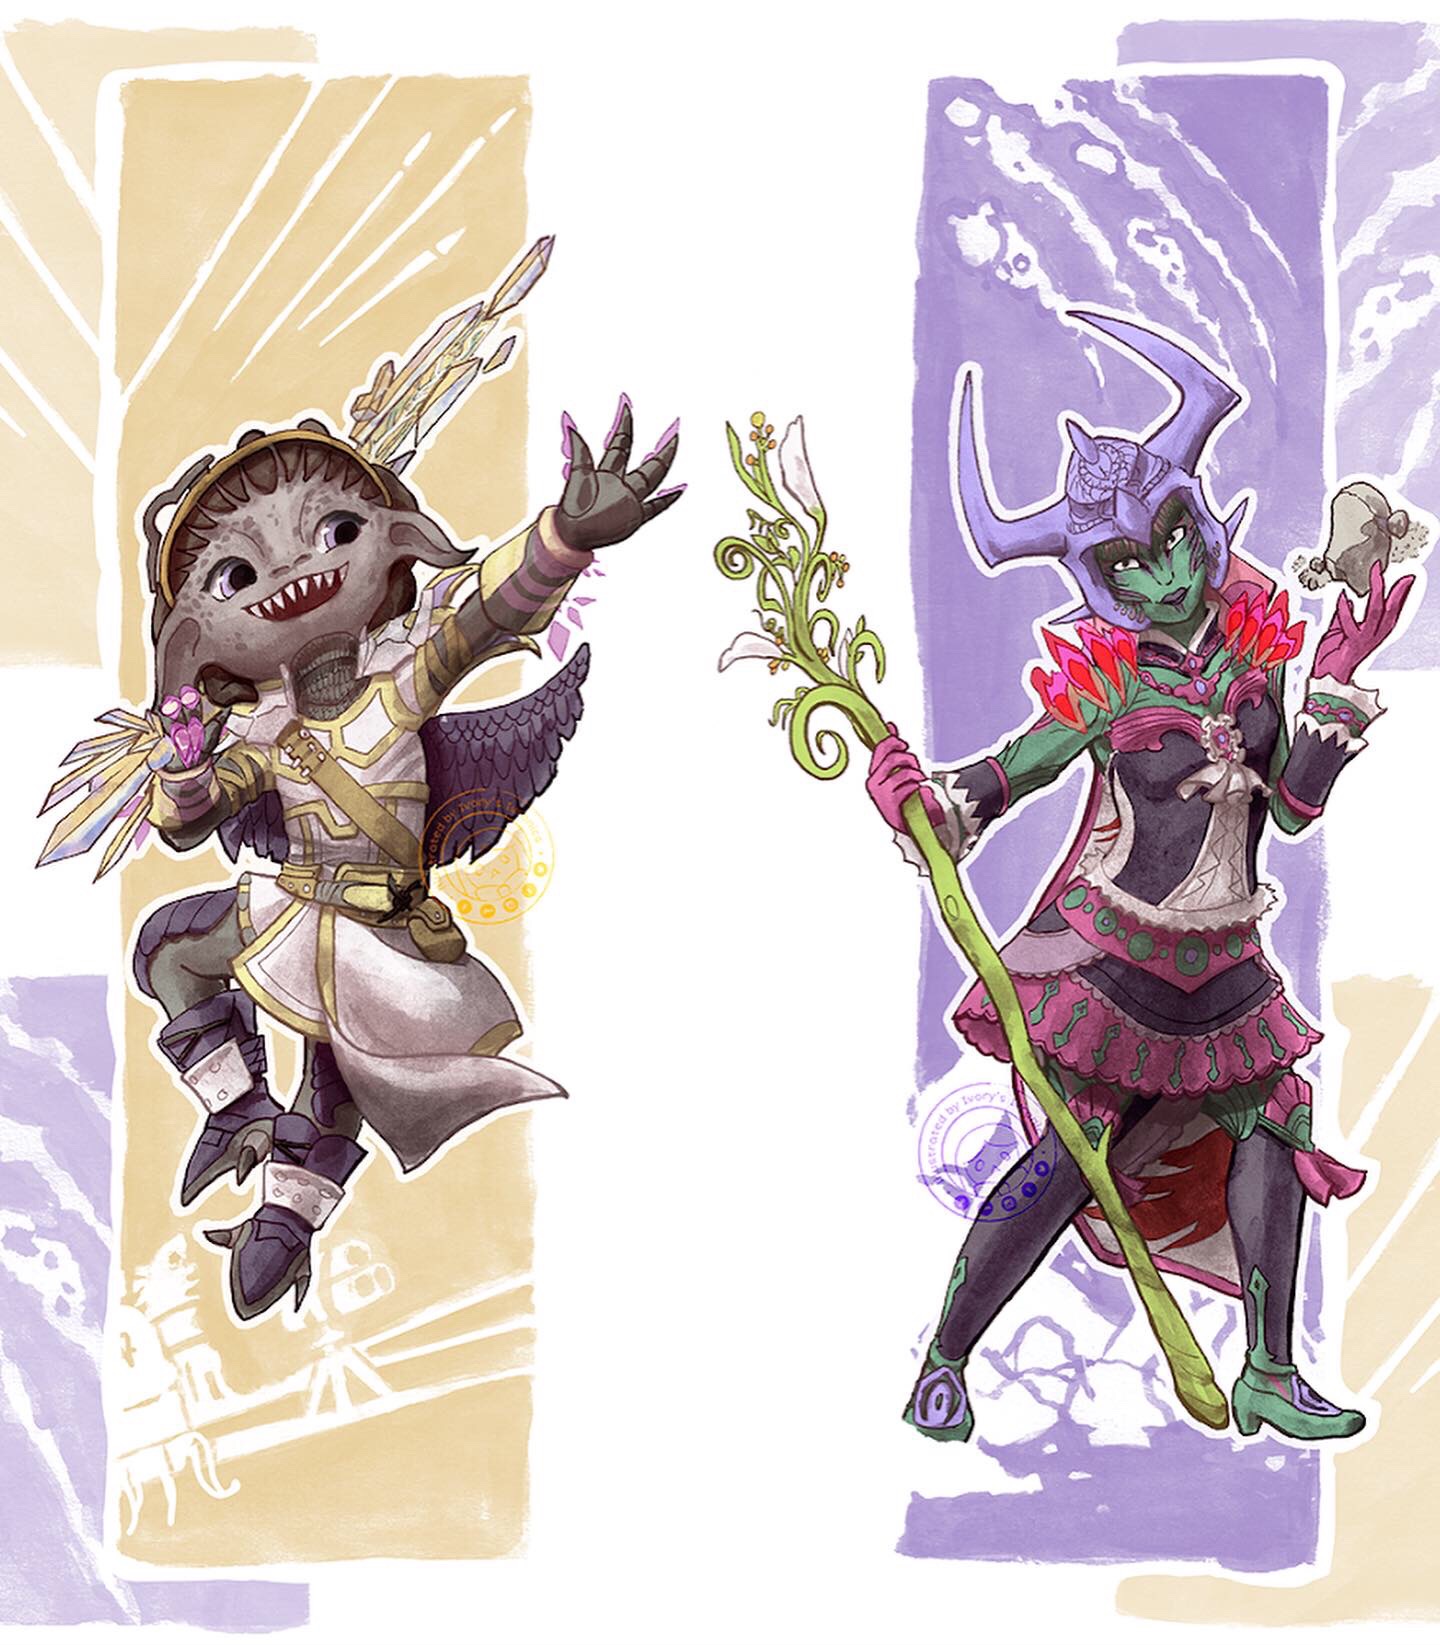 Original digital full body illustrations of custom Guild Wars 2 characters: Cera Ssu (left) and Sprinetta (right).